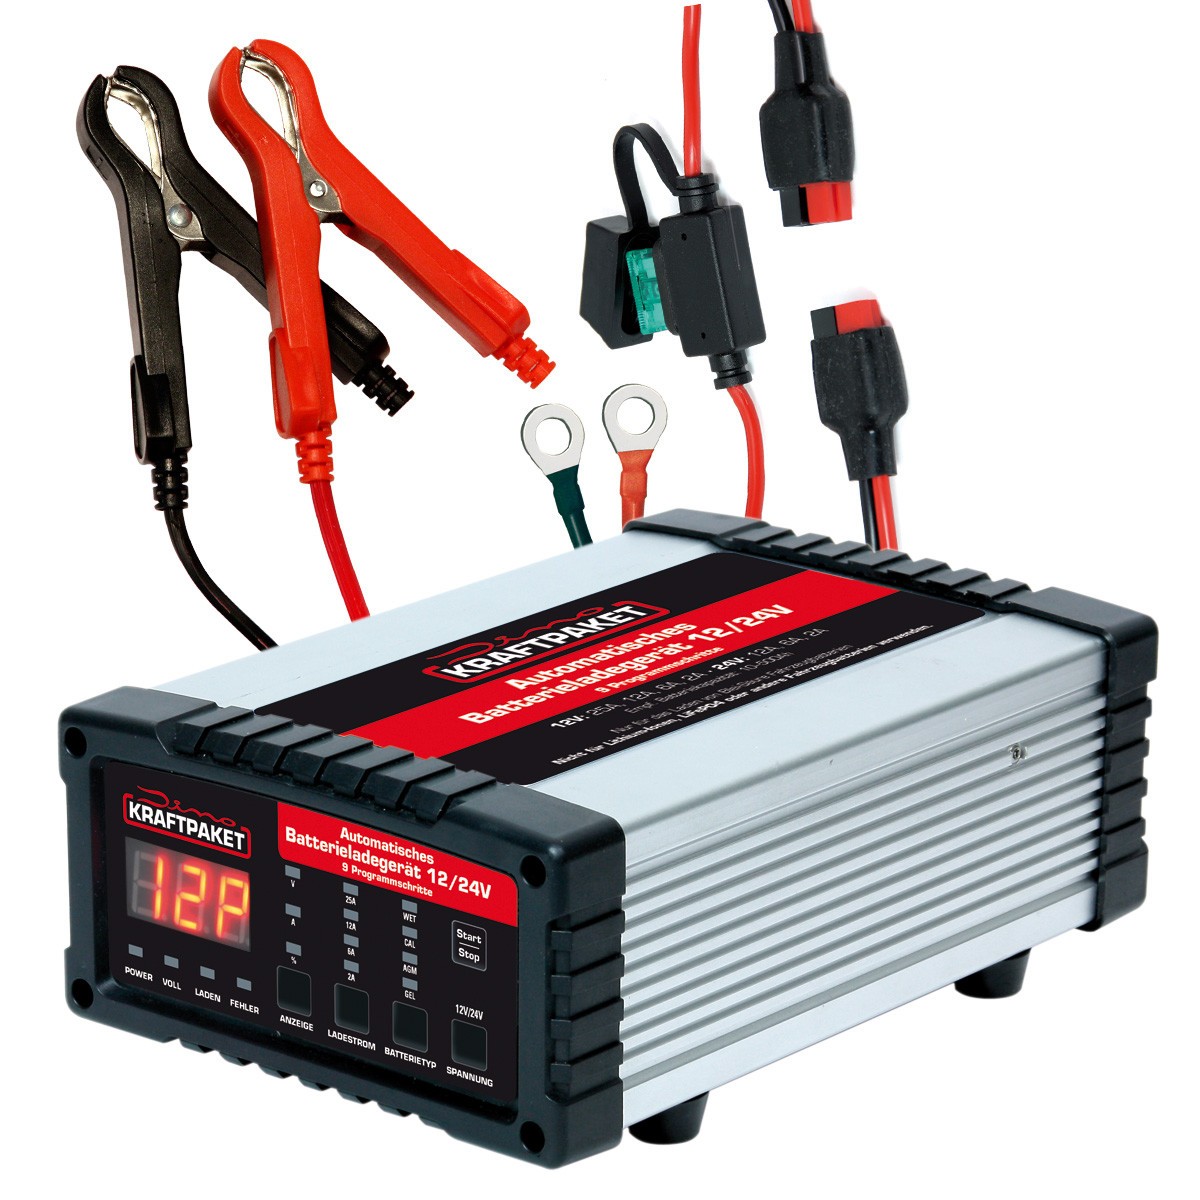 APA Batterie-Ladegerät (Ladestrom: 4 A, Geeignet für: AGM -/Gel-/Nass-/Blei-Säure-Batterien 6/12 V)